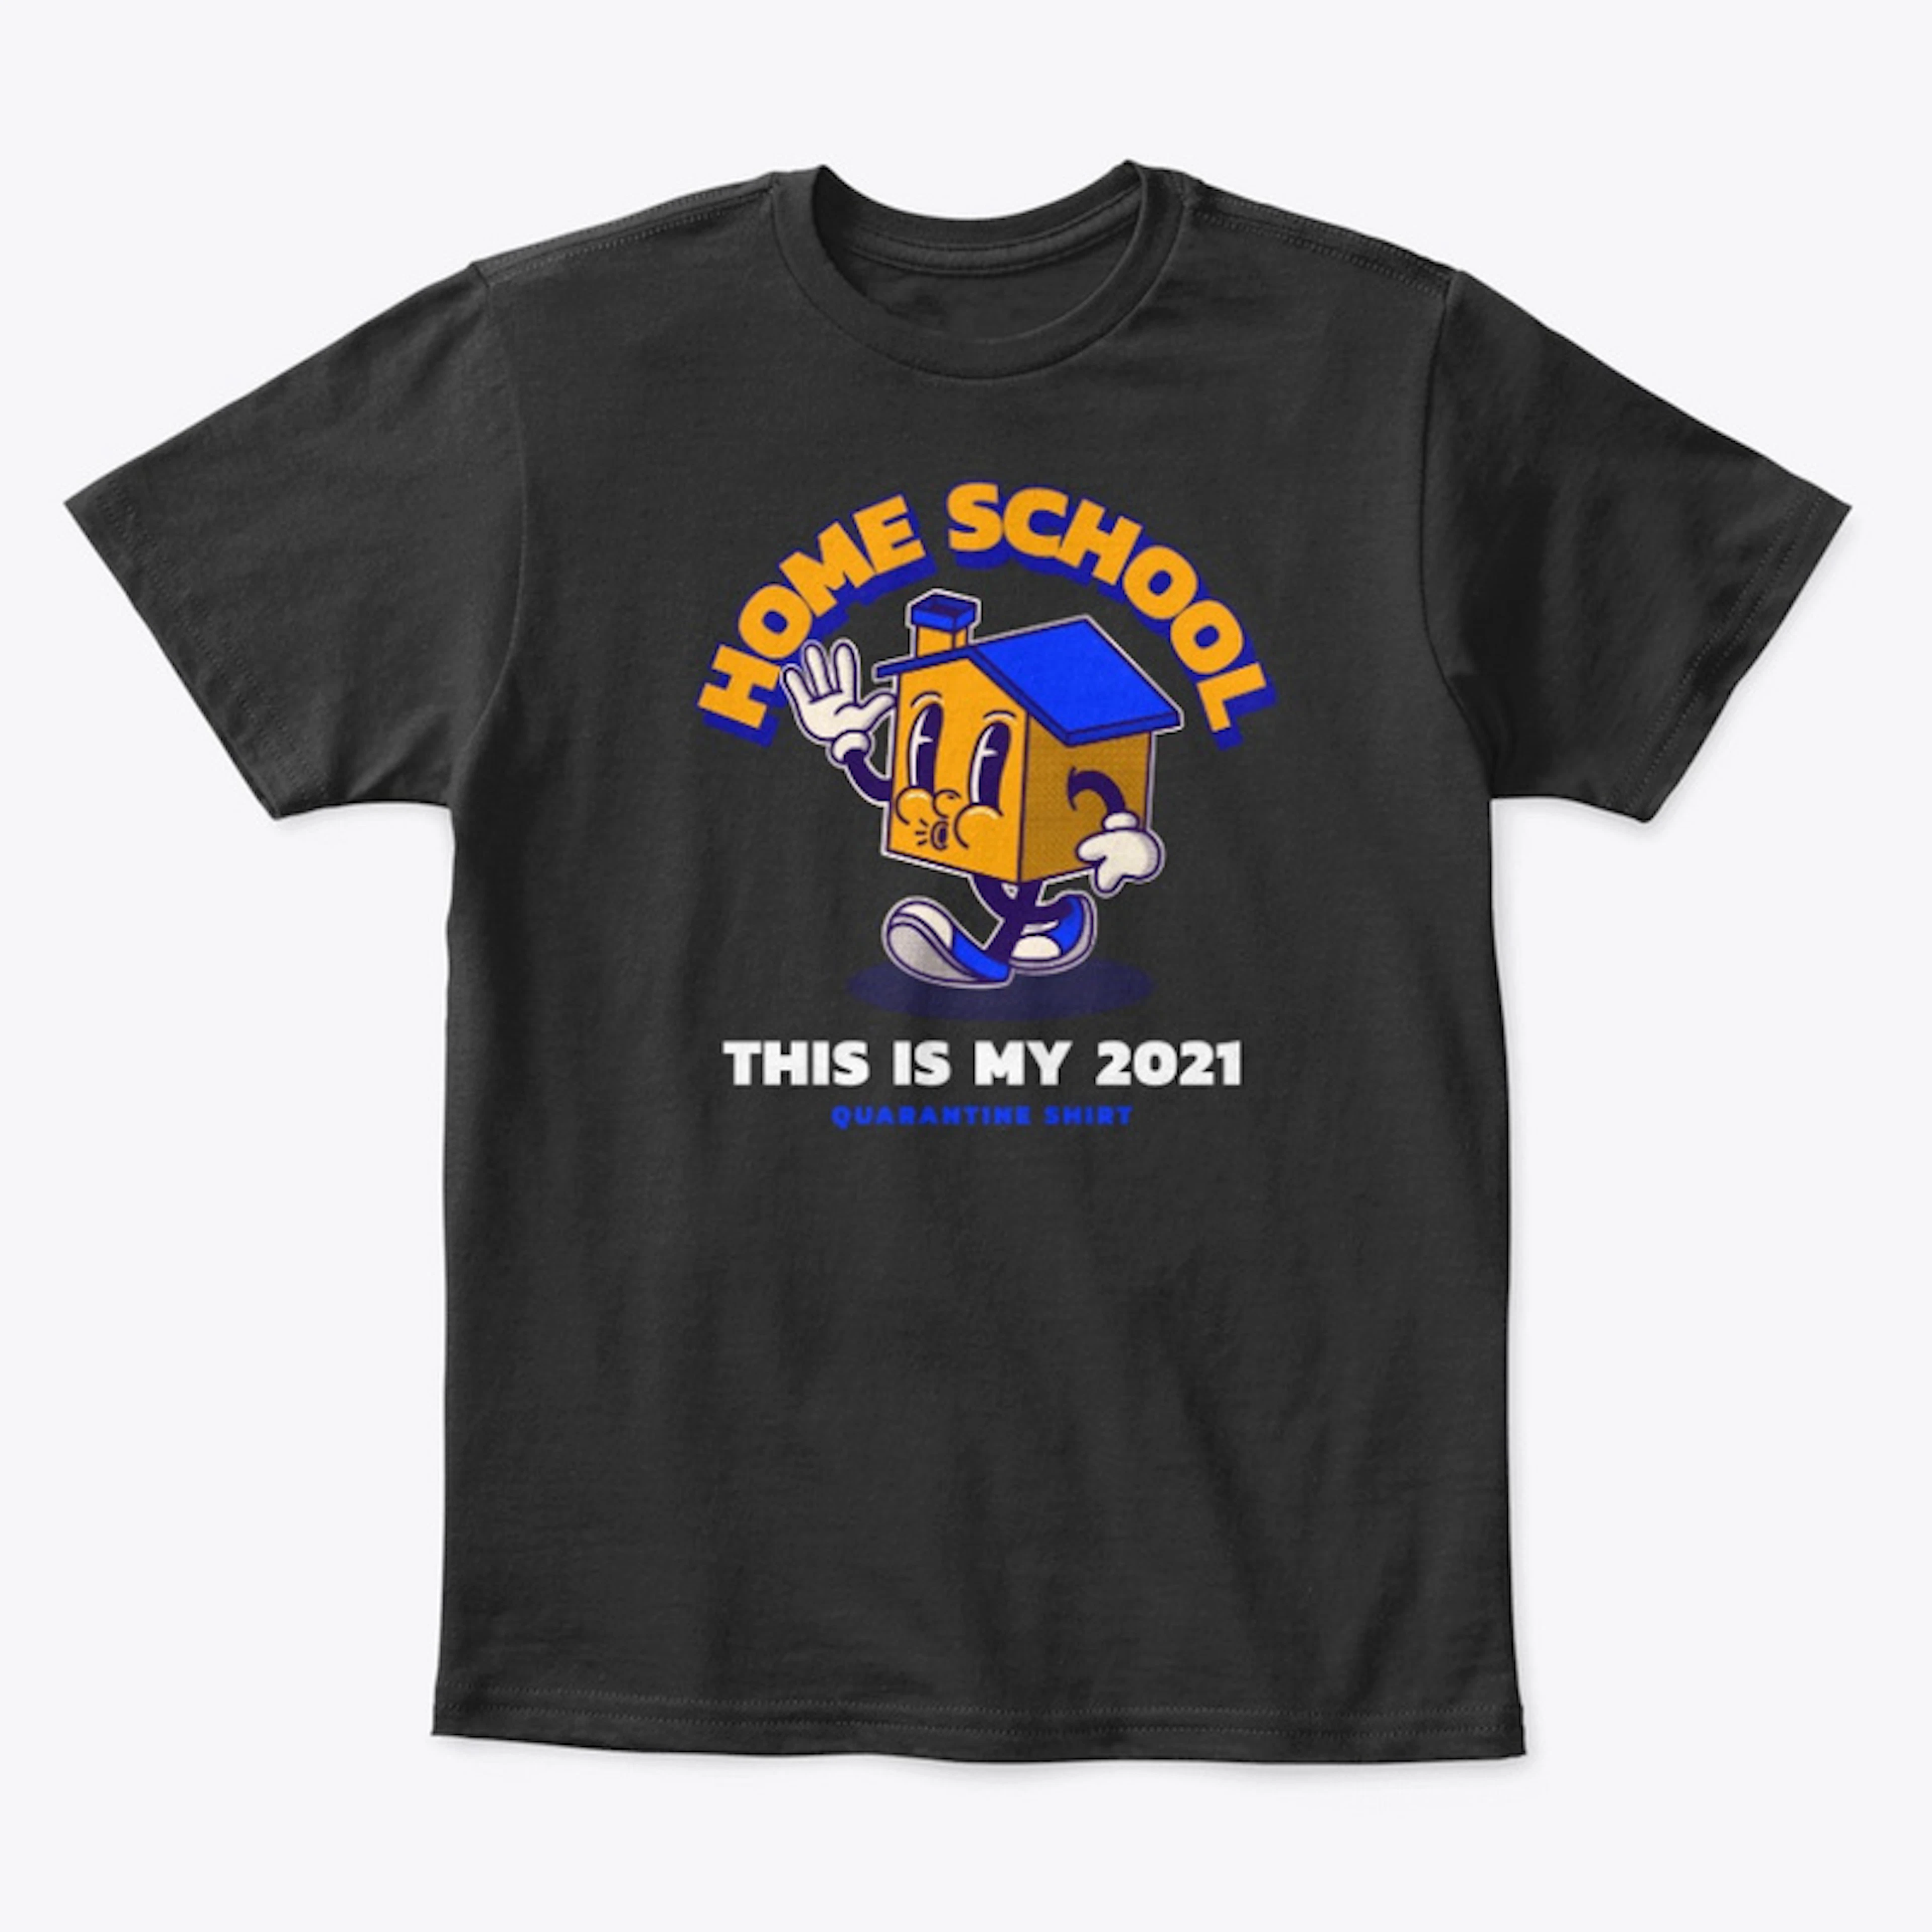 Home School 2021